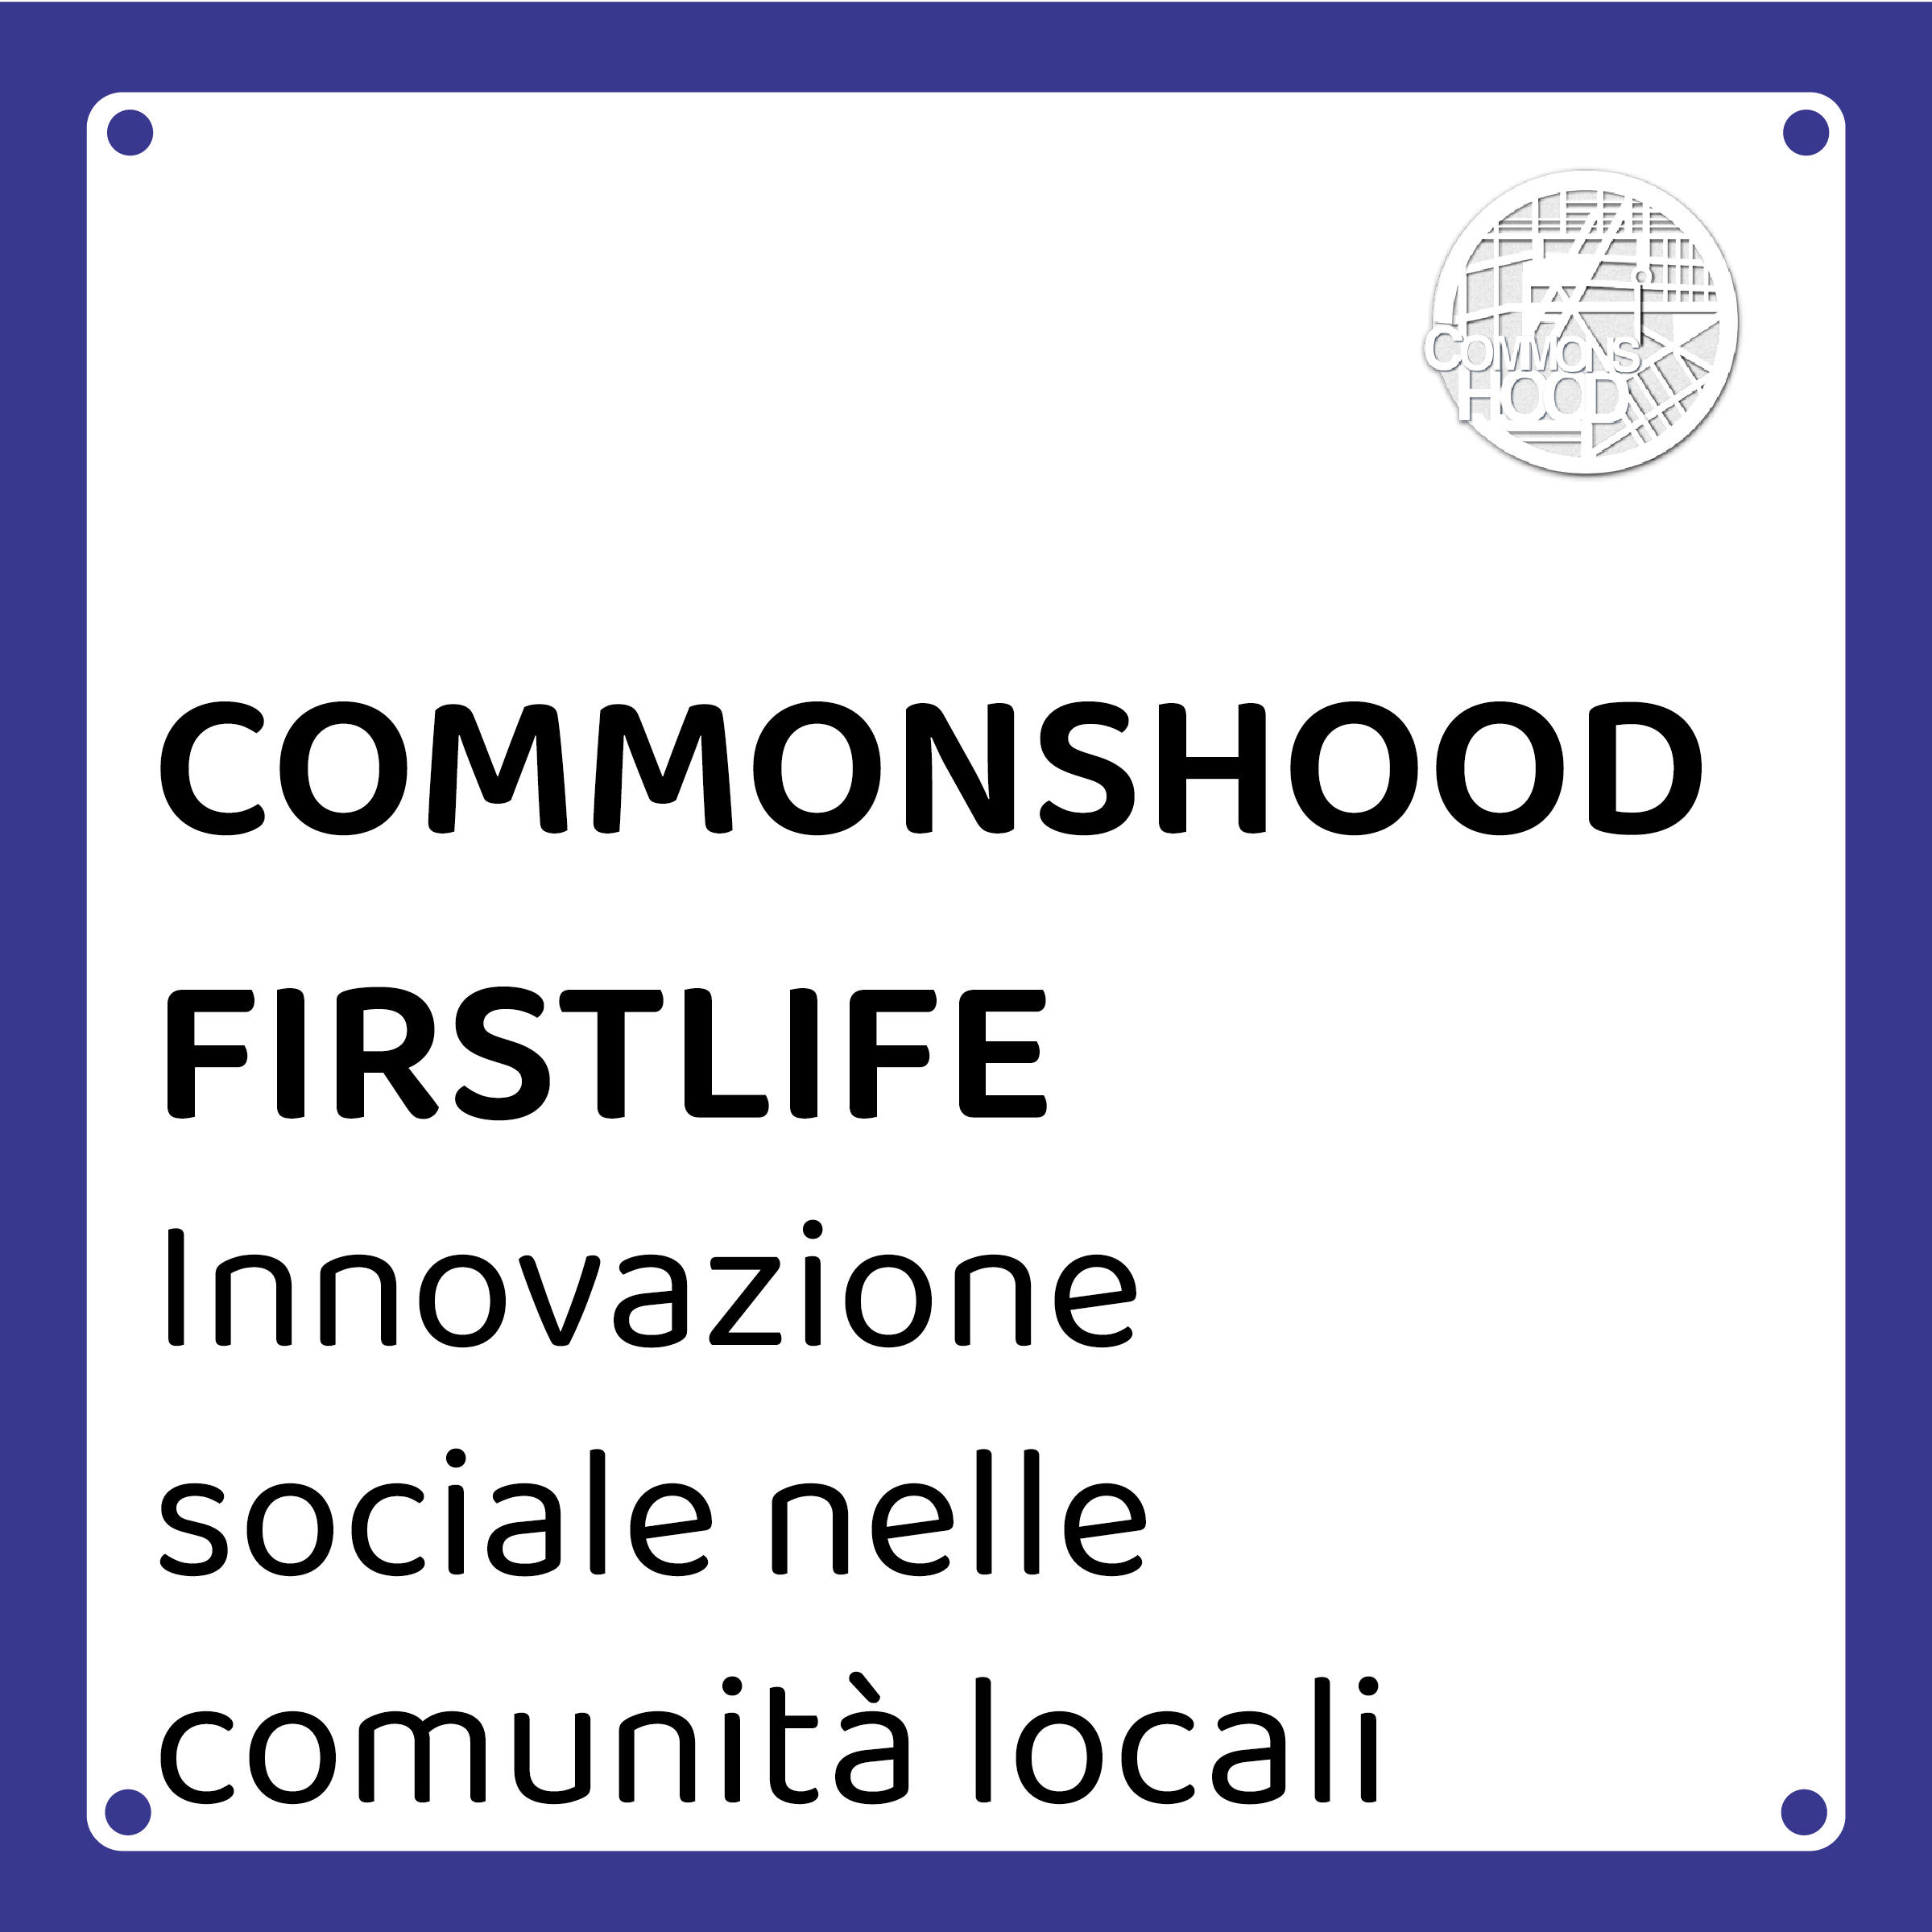 COMMONSHOOD e FIRSTLIFE per l’innovazione sociale nelle comunità locali